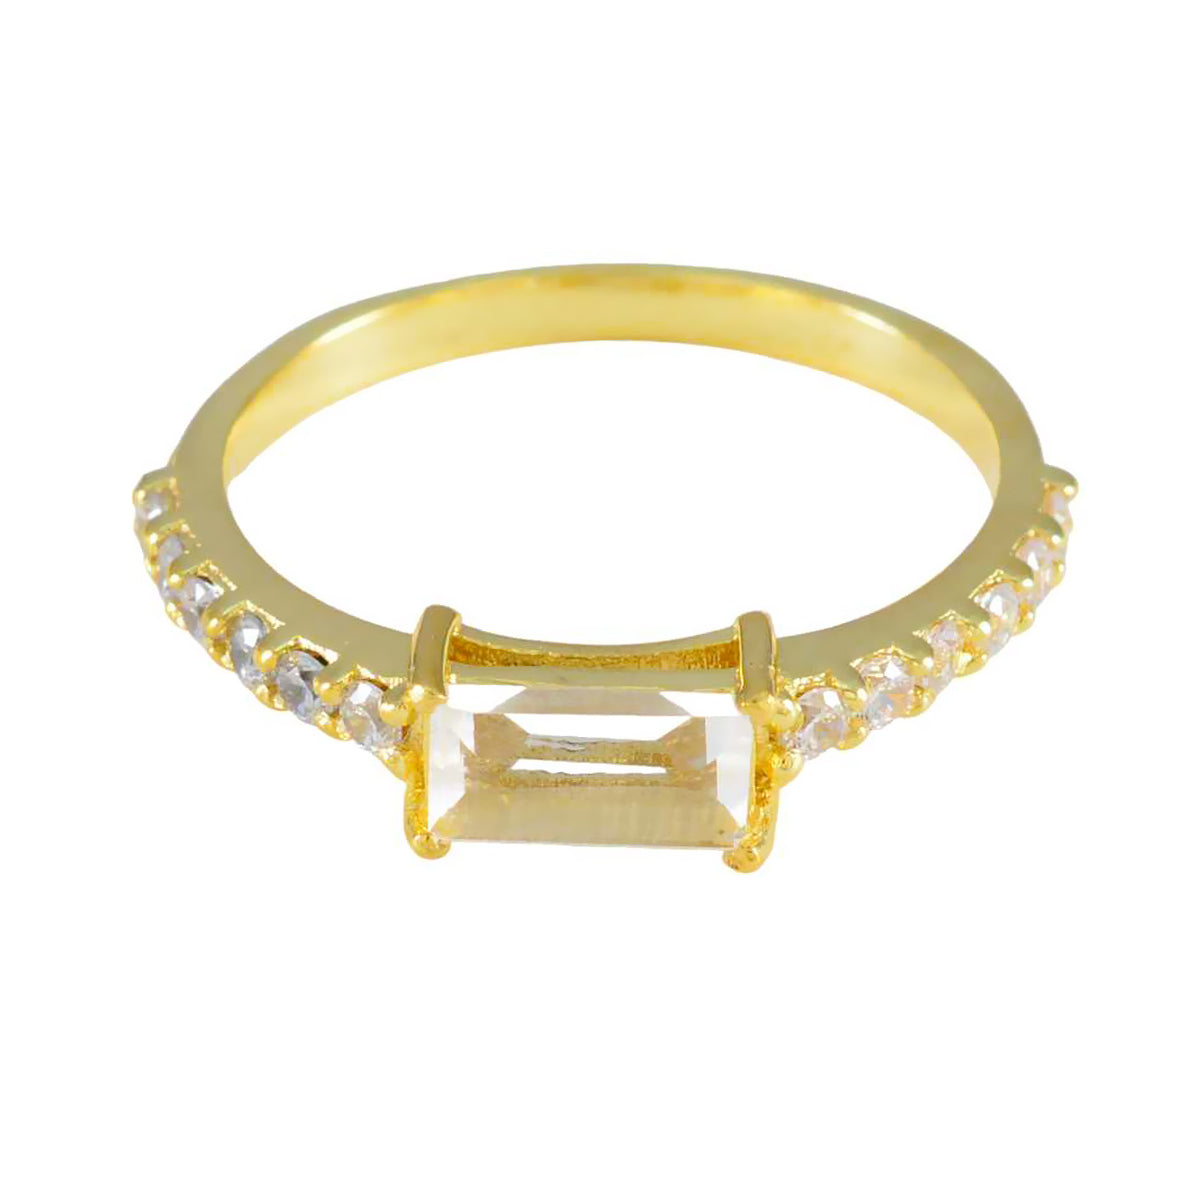 Riyo Suppiler zilveren ring met geelgouden witte CZ-steen stokbroodvorm Prong Setting Ring